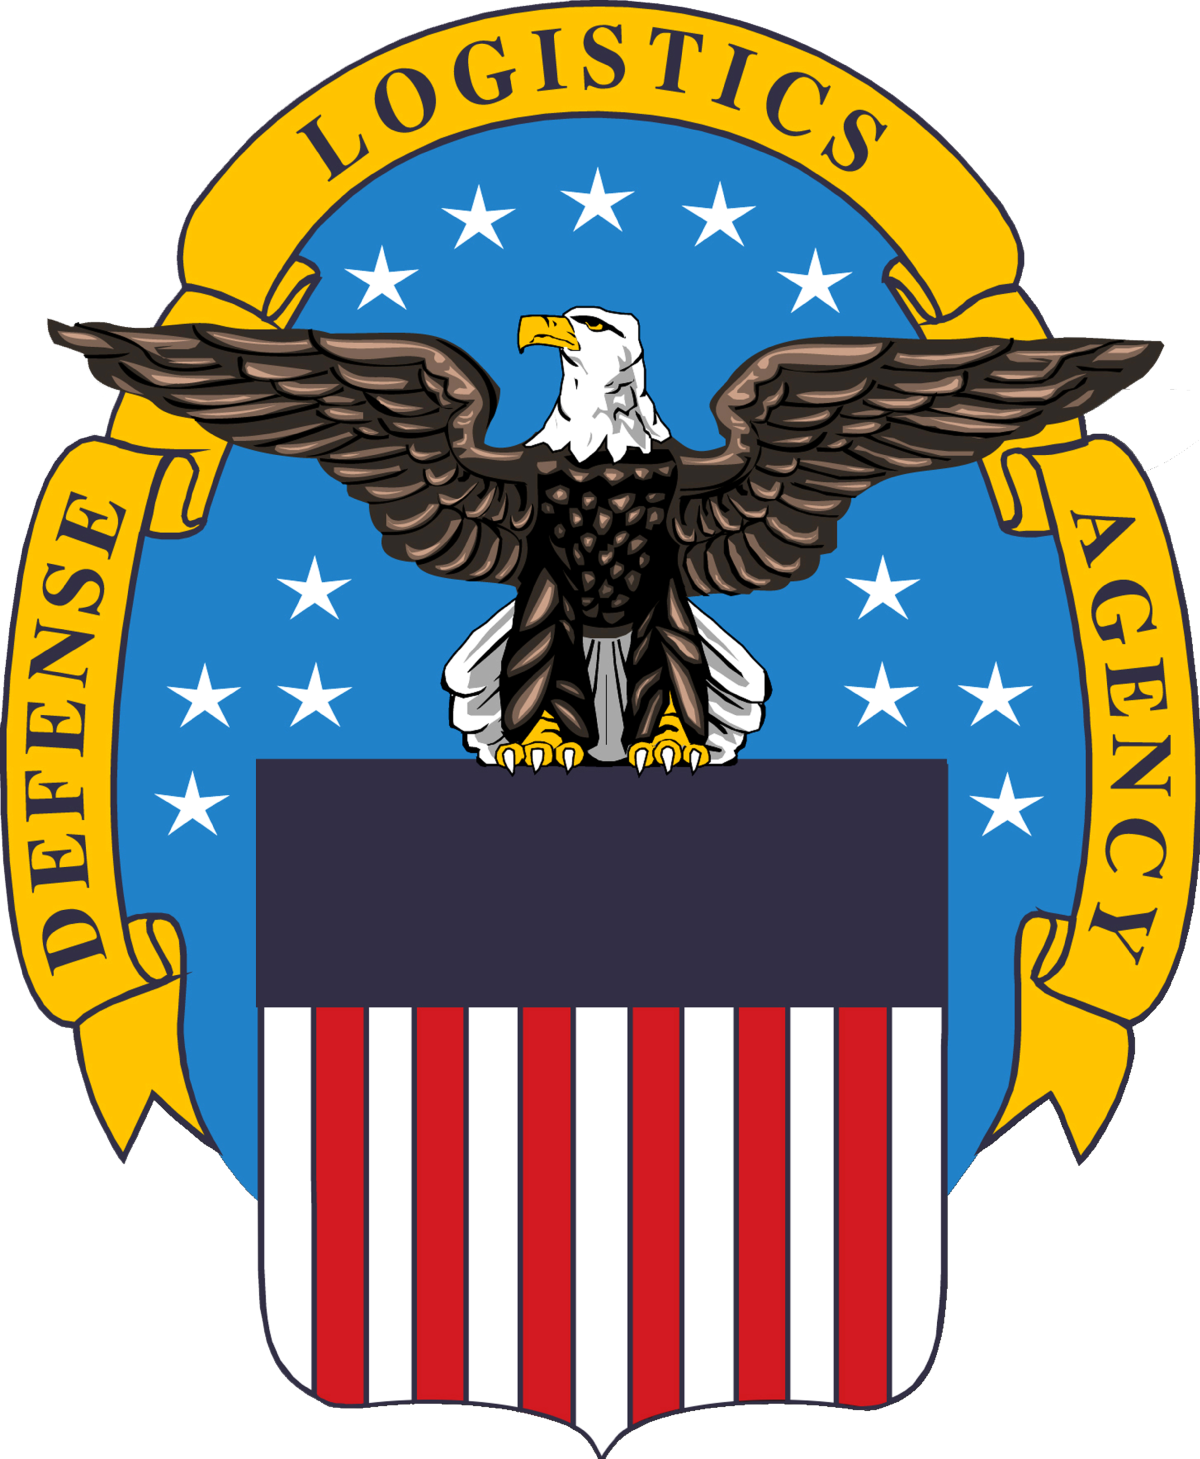 DLA (Defense Logistics Agency)